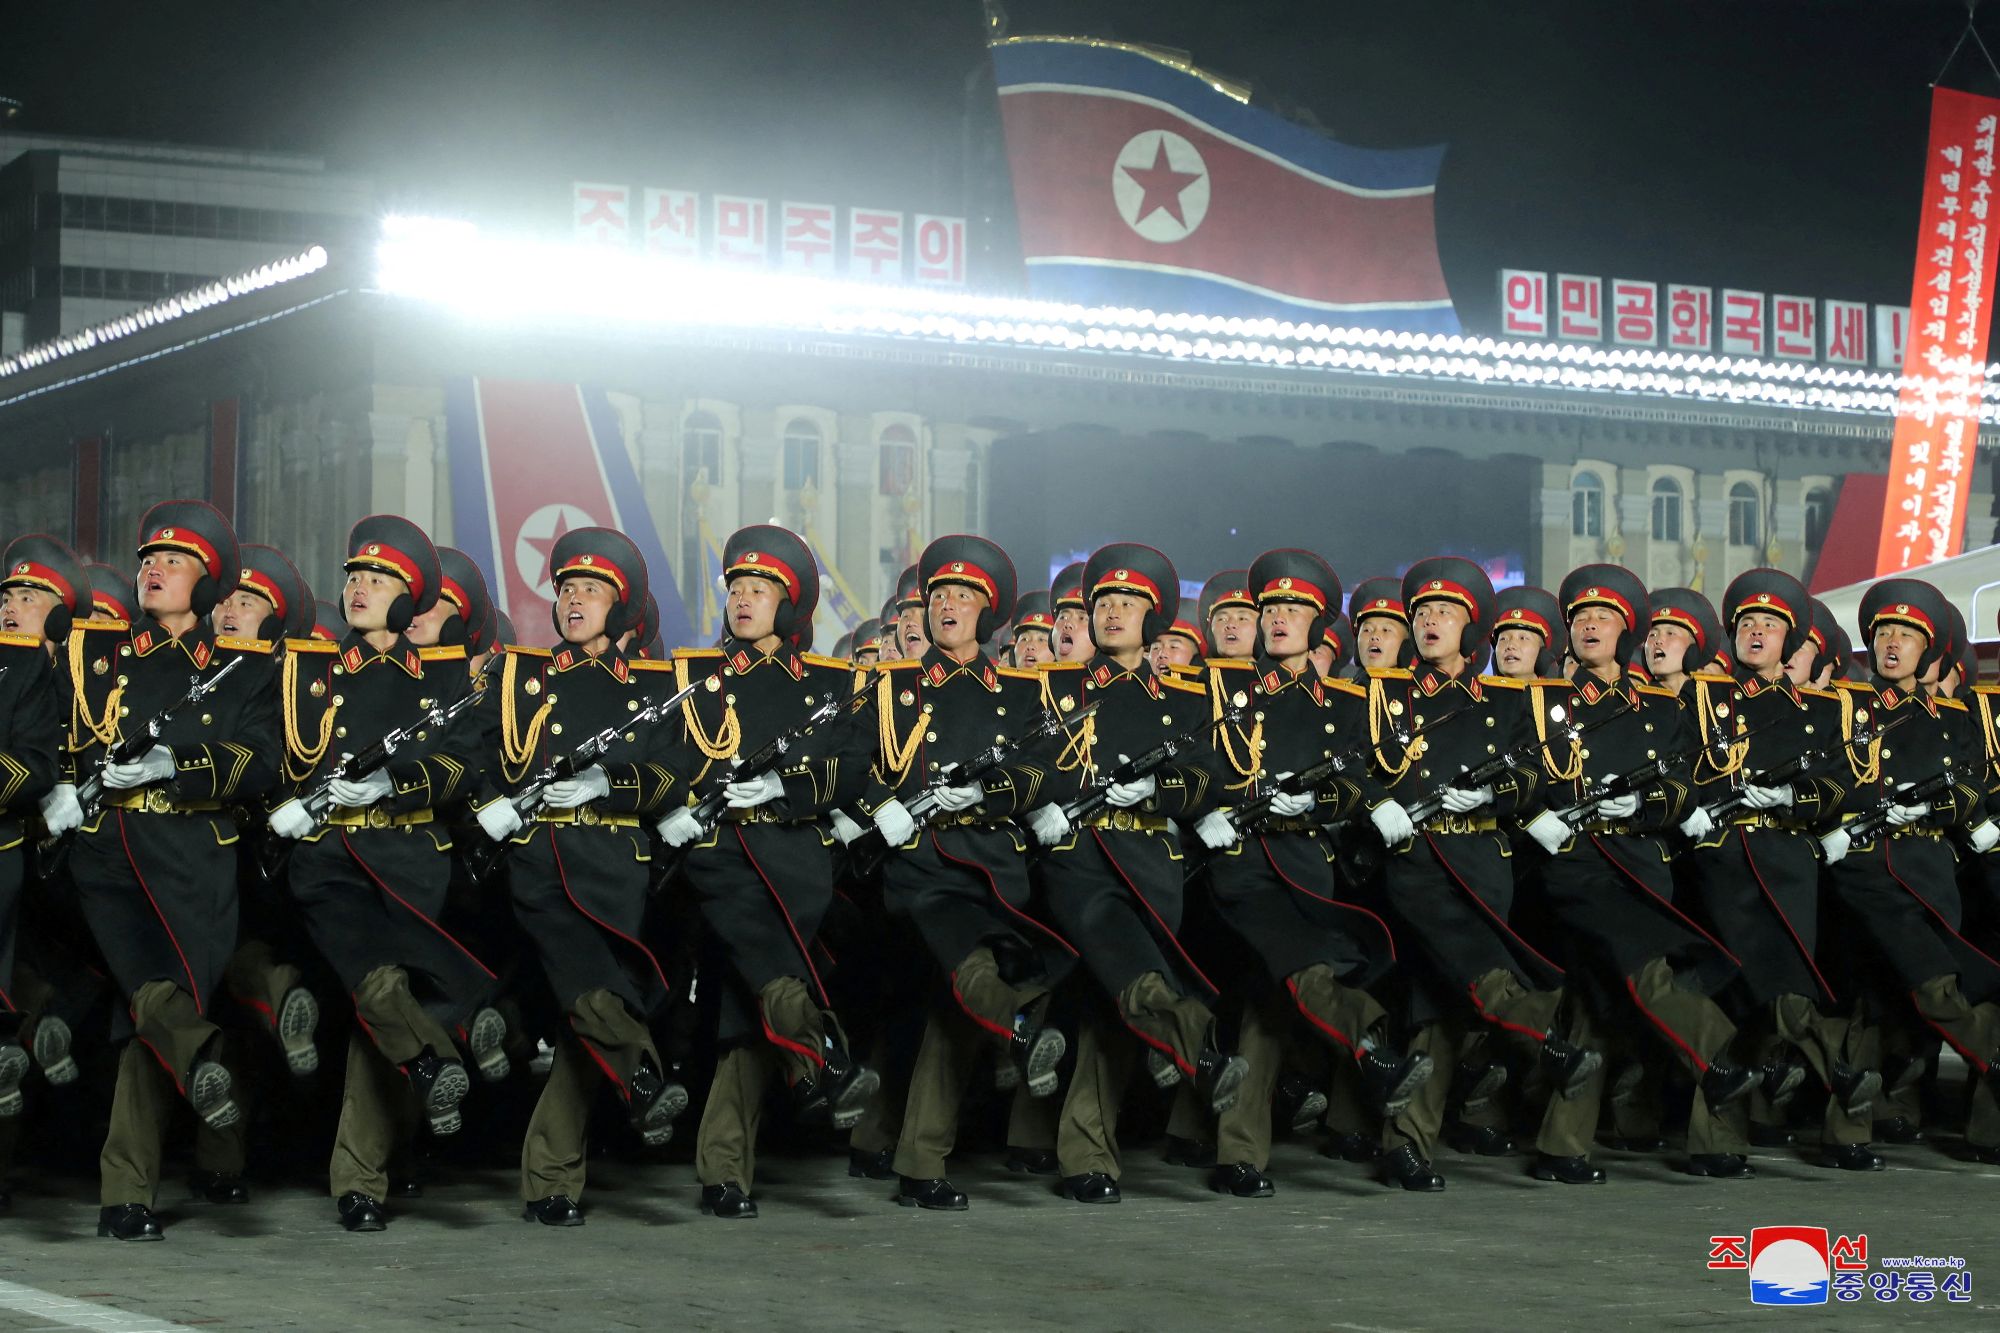 Βόρεια Κορέα: 800.000 αιτήσεις για κατάταξη στον Στρατό σε μια ημέρα – Θέλουν να πολεμήσουν κατά των ΗΠΑ